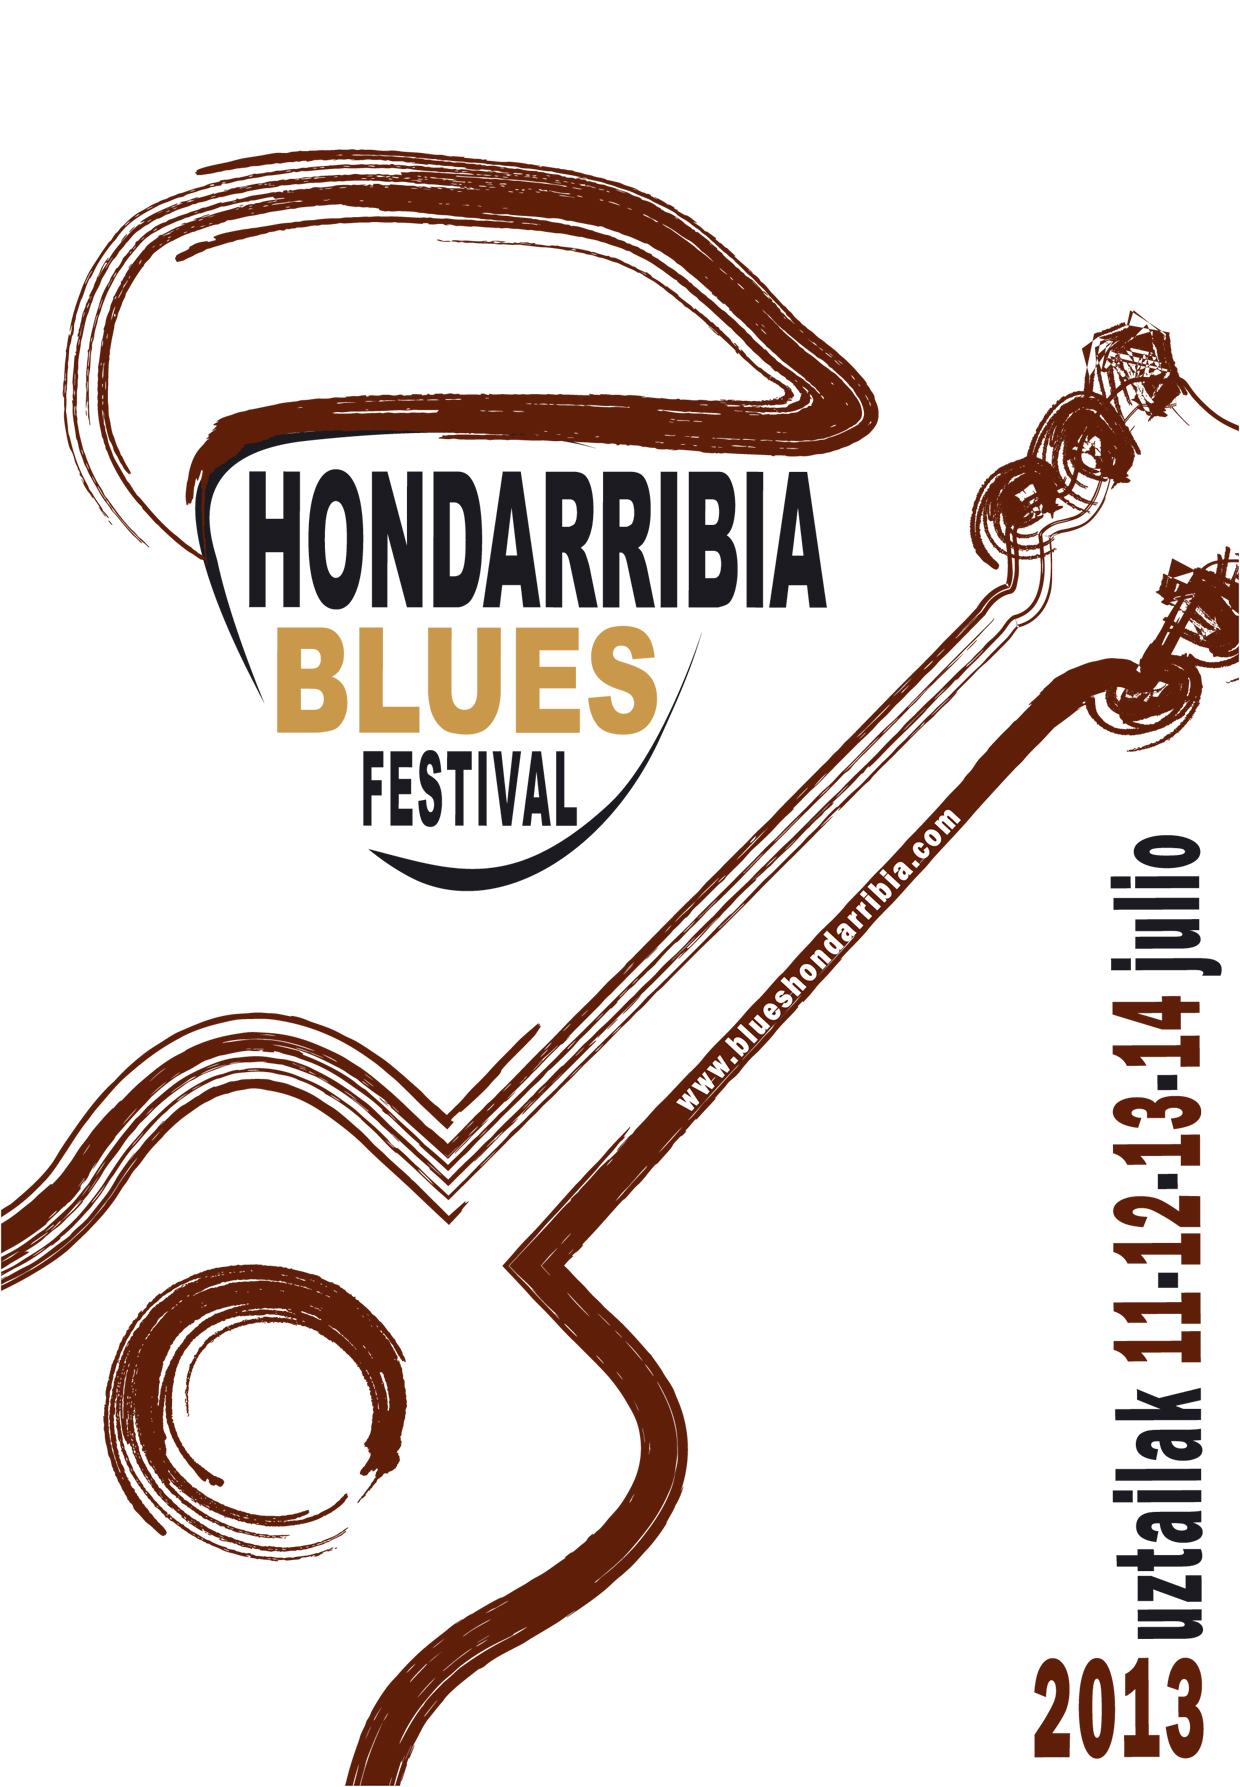 Hondarribia 2013